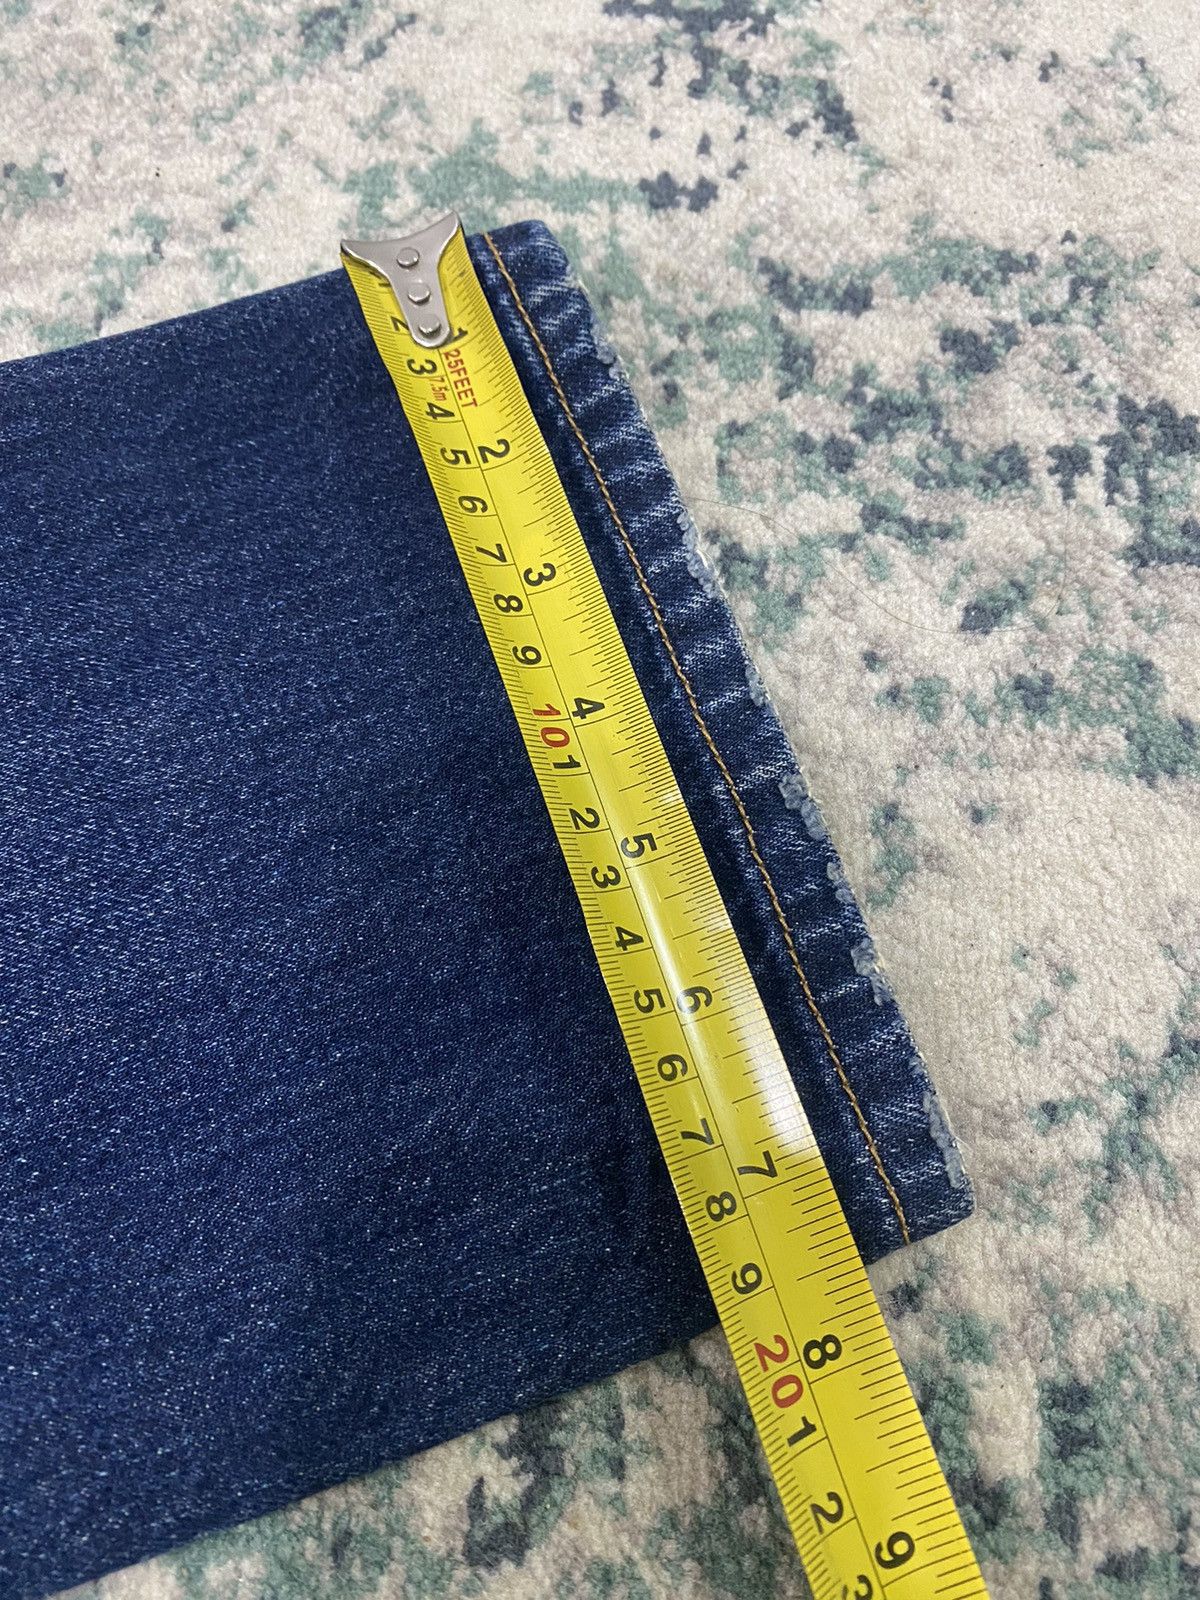 Levi’s Original Paint Splatter Limited Edition Jeans - 21